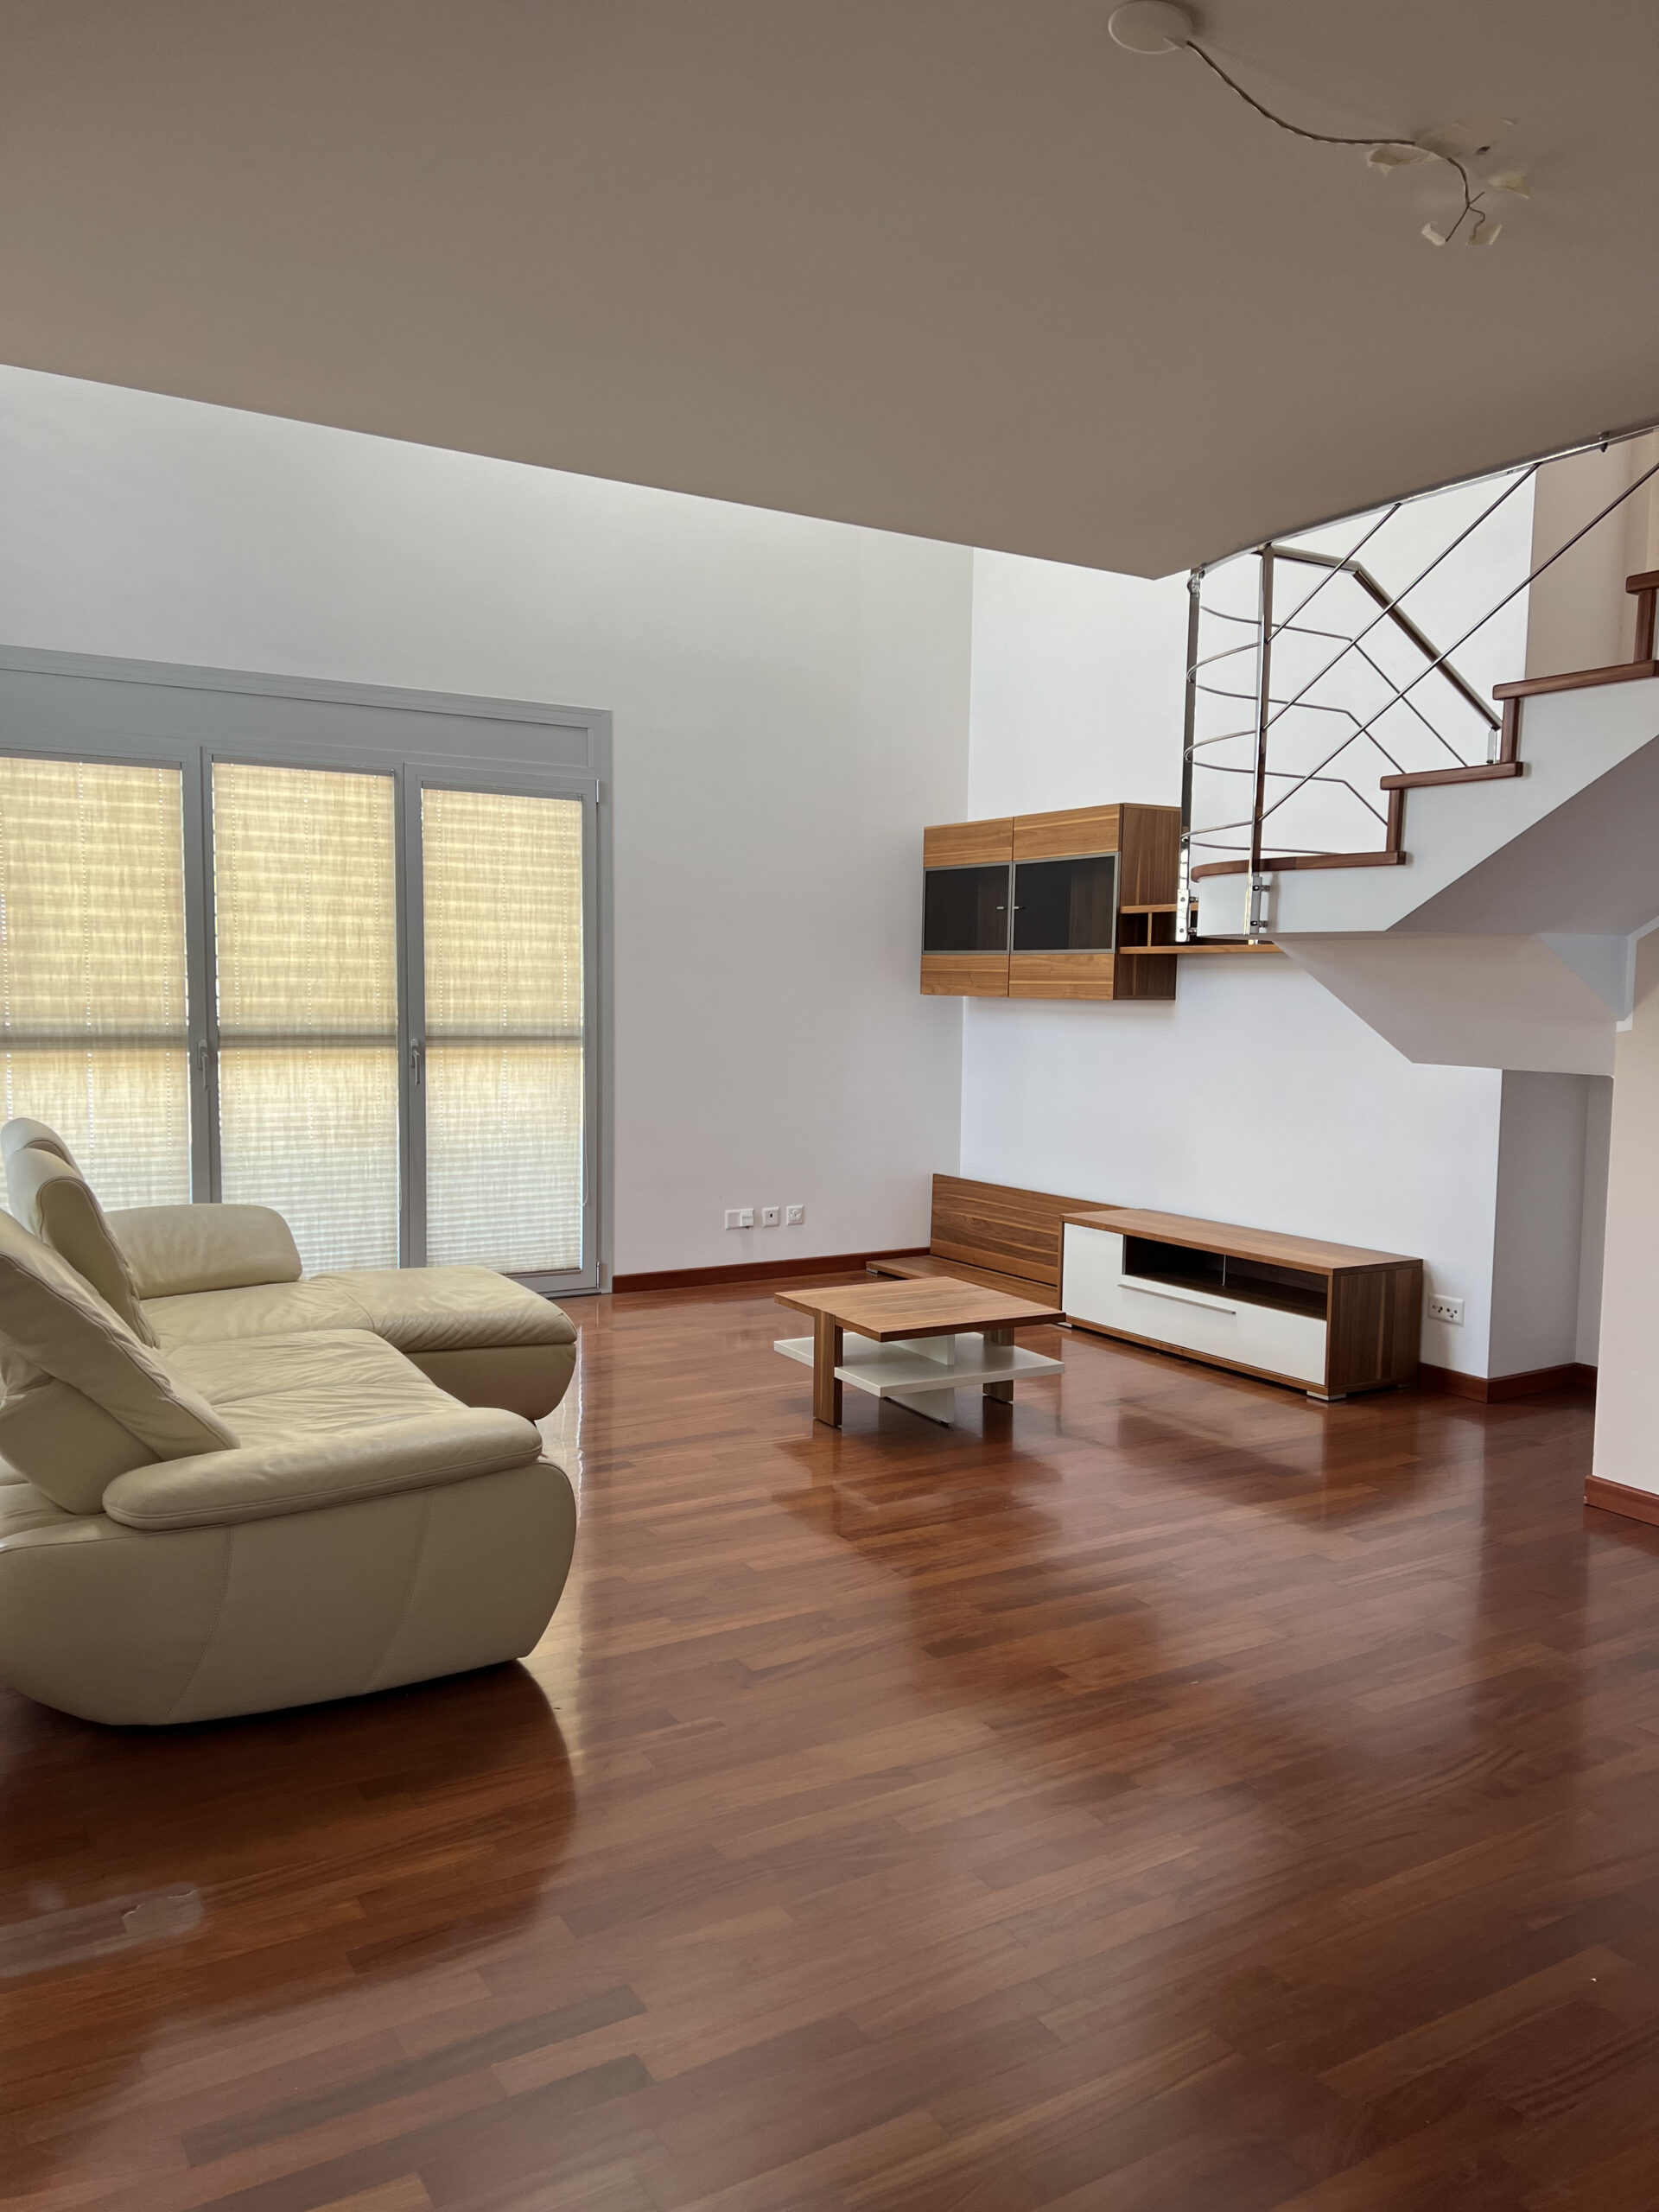 LUGANO – PREGASSONA – Ampio attico duplex con grande terrazza